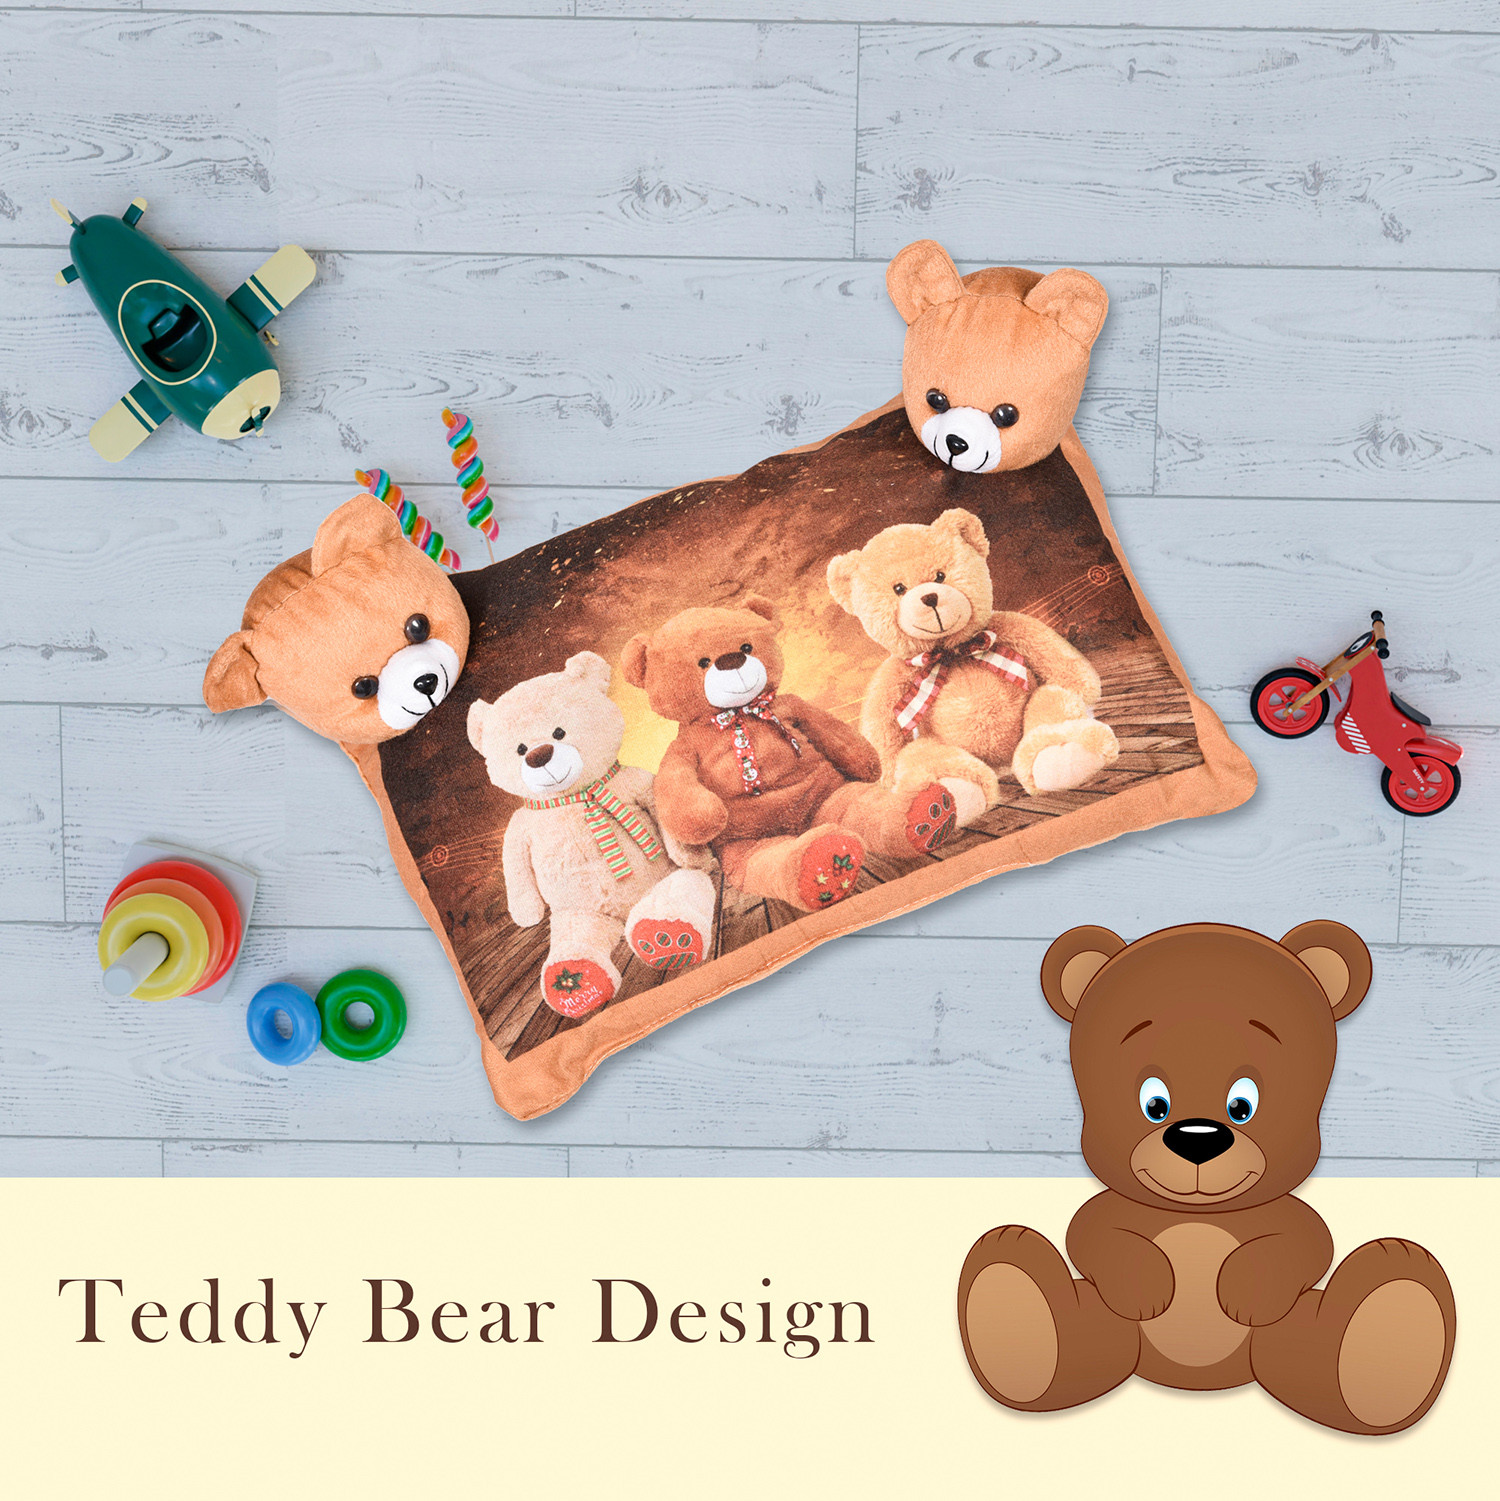 Kuber Industries Teddy Bear Design Baby Pillow|Velvet Super soft Kids Pillow For Sleeping & Travel,12 x 18 Inch,(Brown)